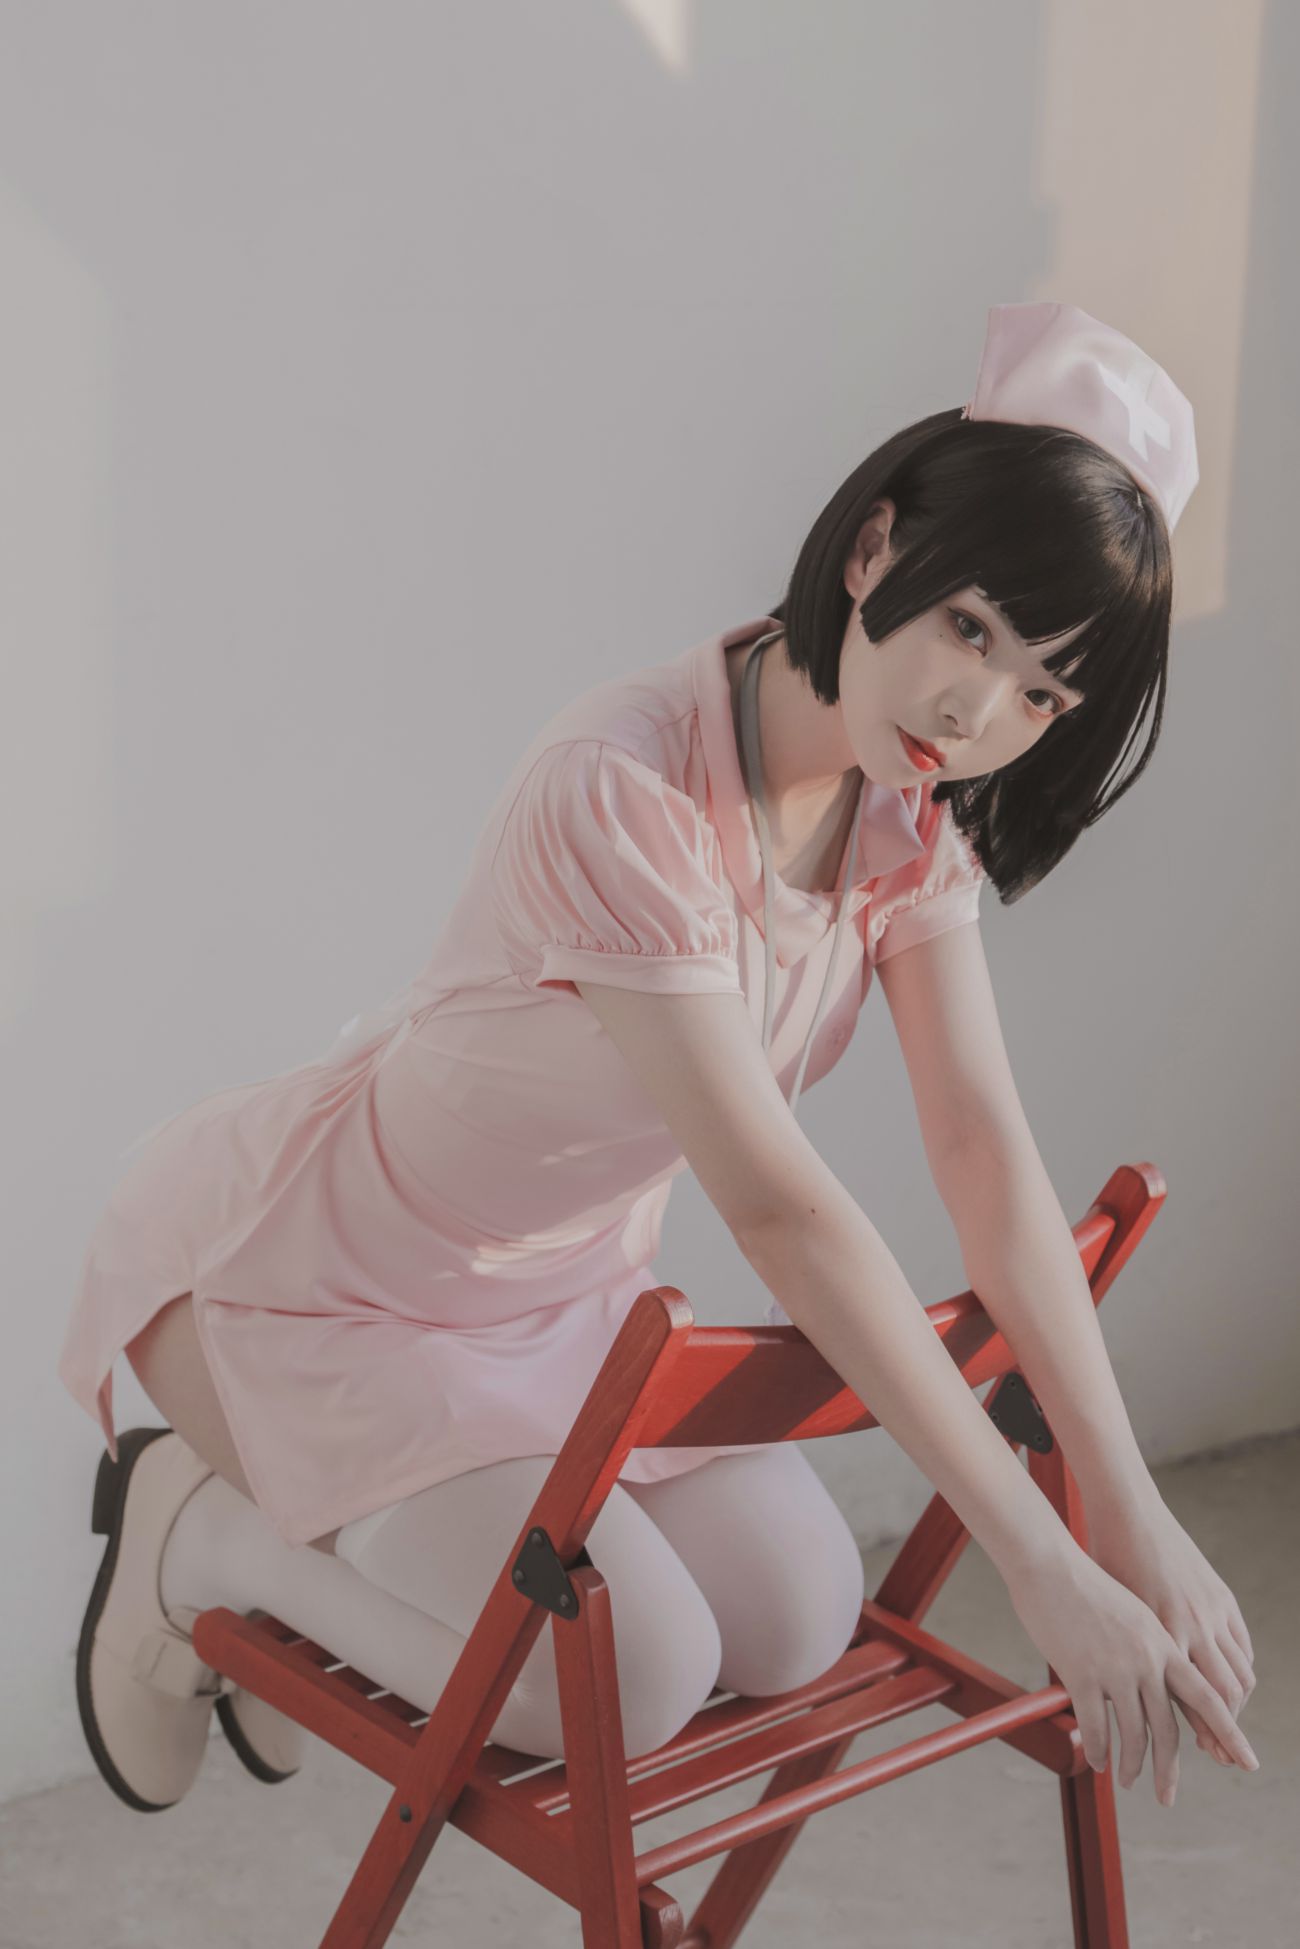 微博美少女Fushii海堂Cosplay性感写真护士 (26)